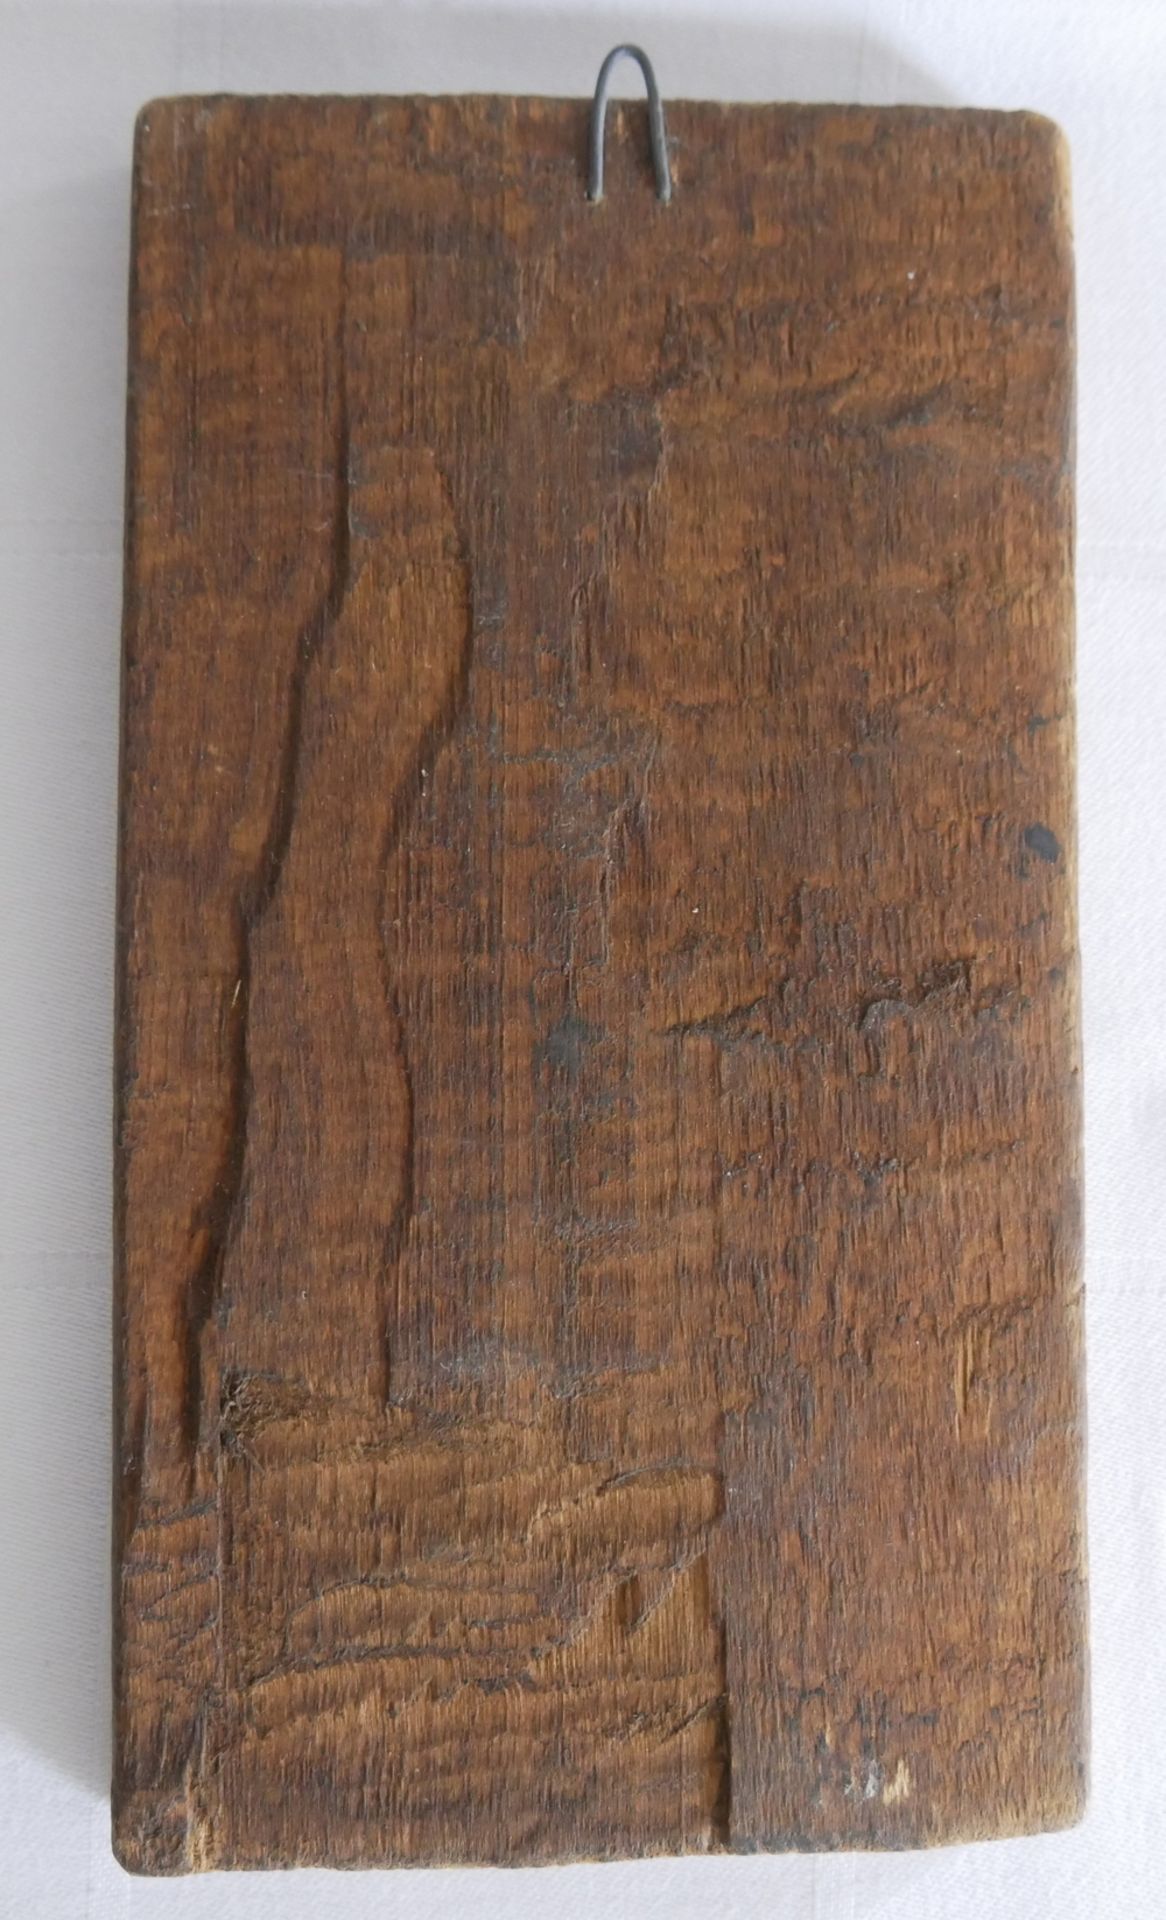 Ikone aus Holz "Taufe Christi". Höhe ca. 20 cm, Breite ca. 11 cm - Image 2 of 2